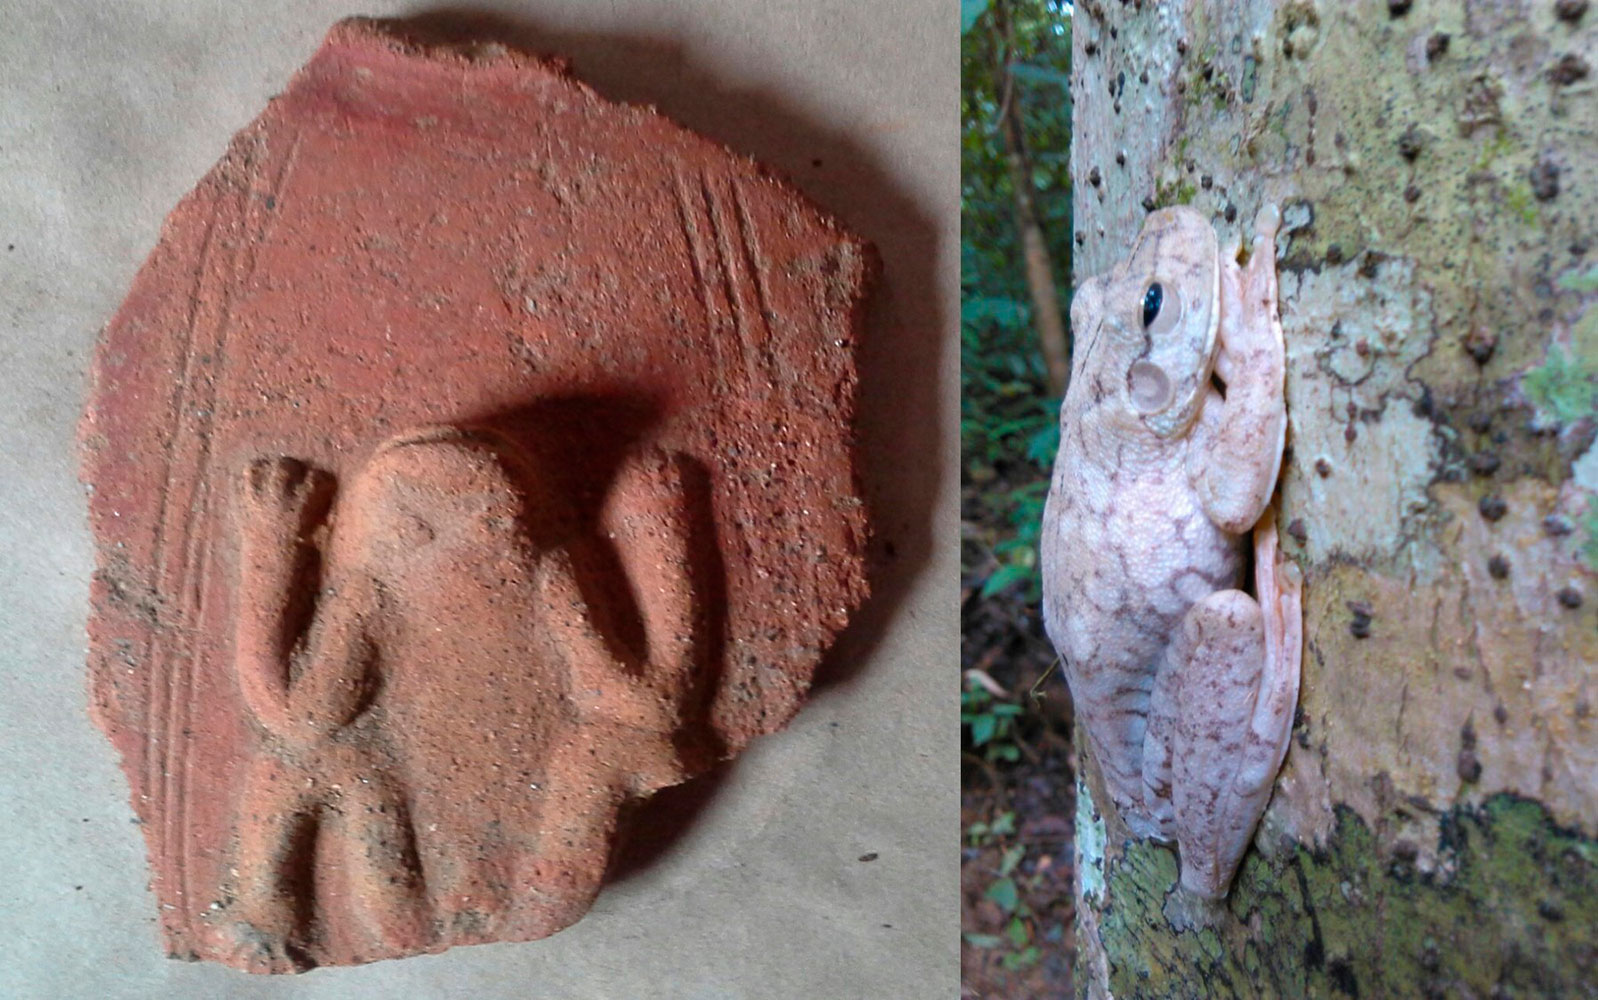 Representación de rana arborícola en cerámica, sitio cantarero